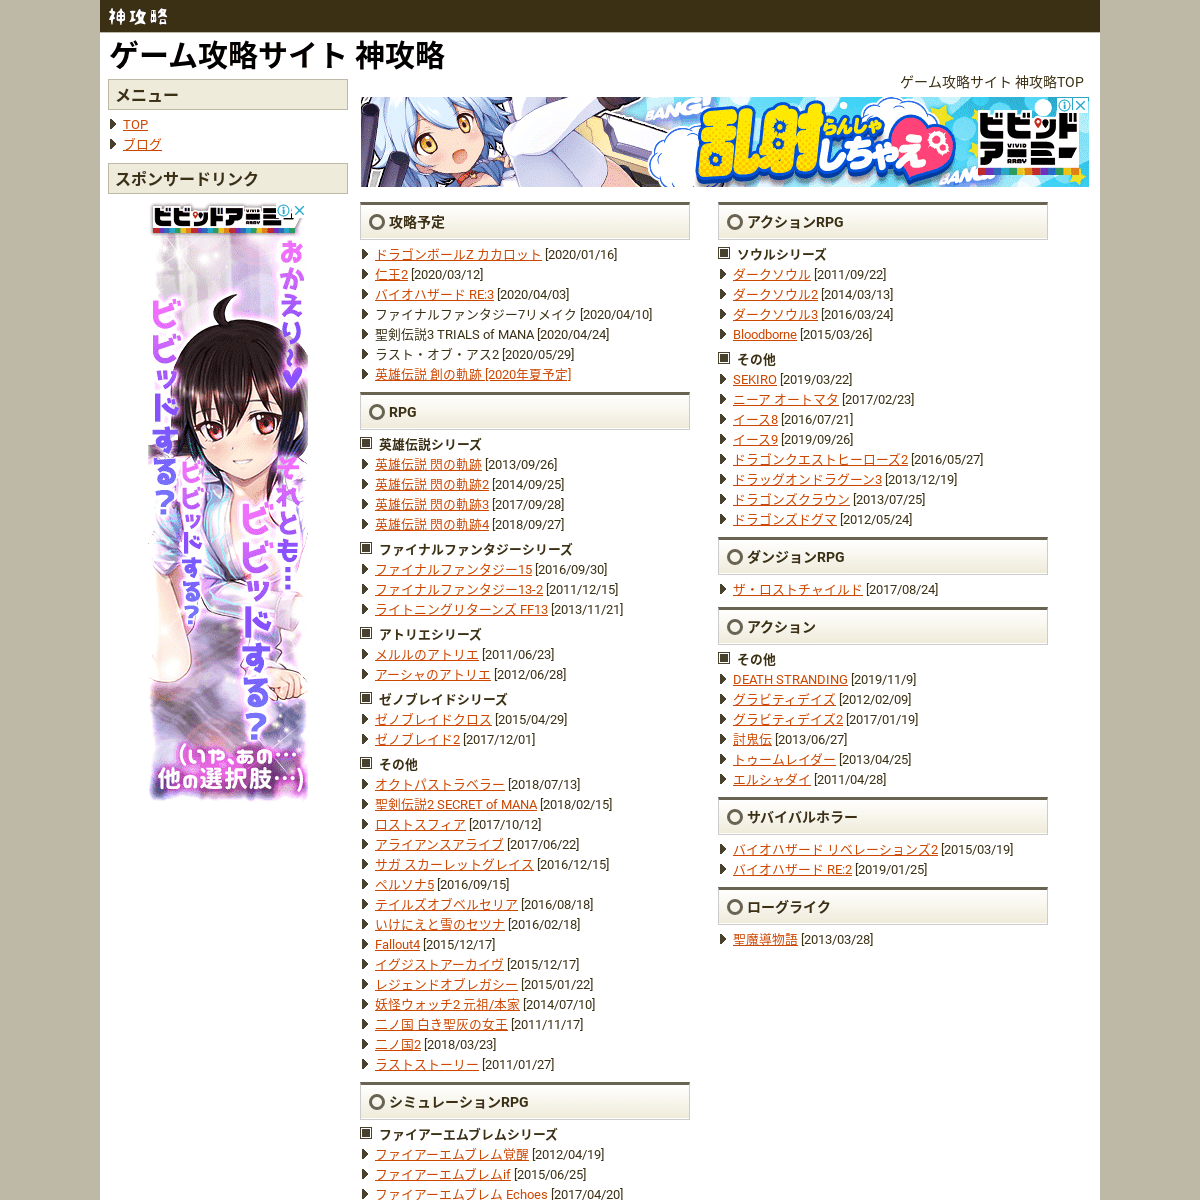 A complete backup of kamikouryaku.com